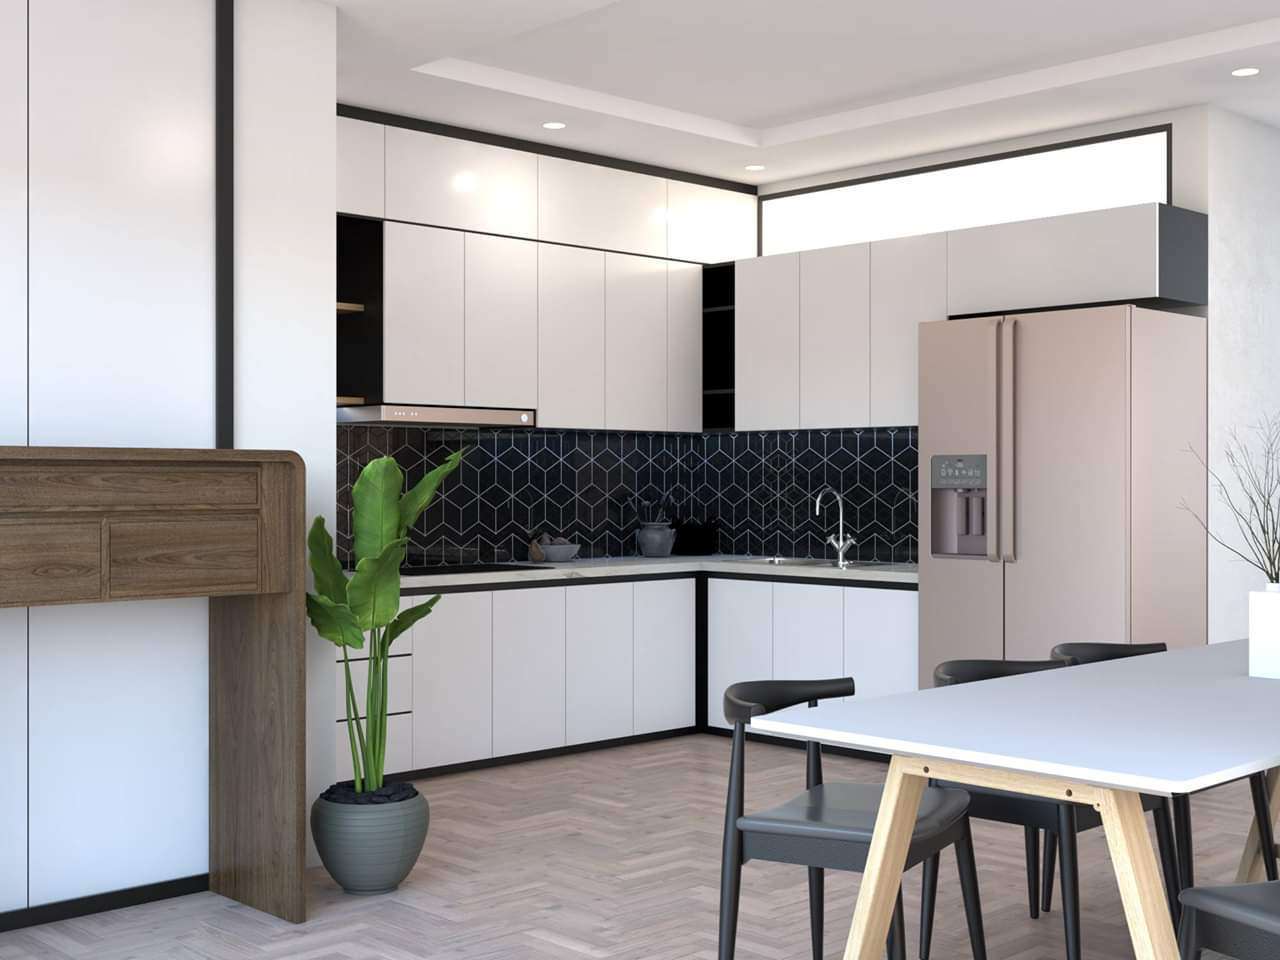 Mẫu thiết kế tủ bếp đen trắng bám sát trần